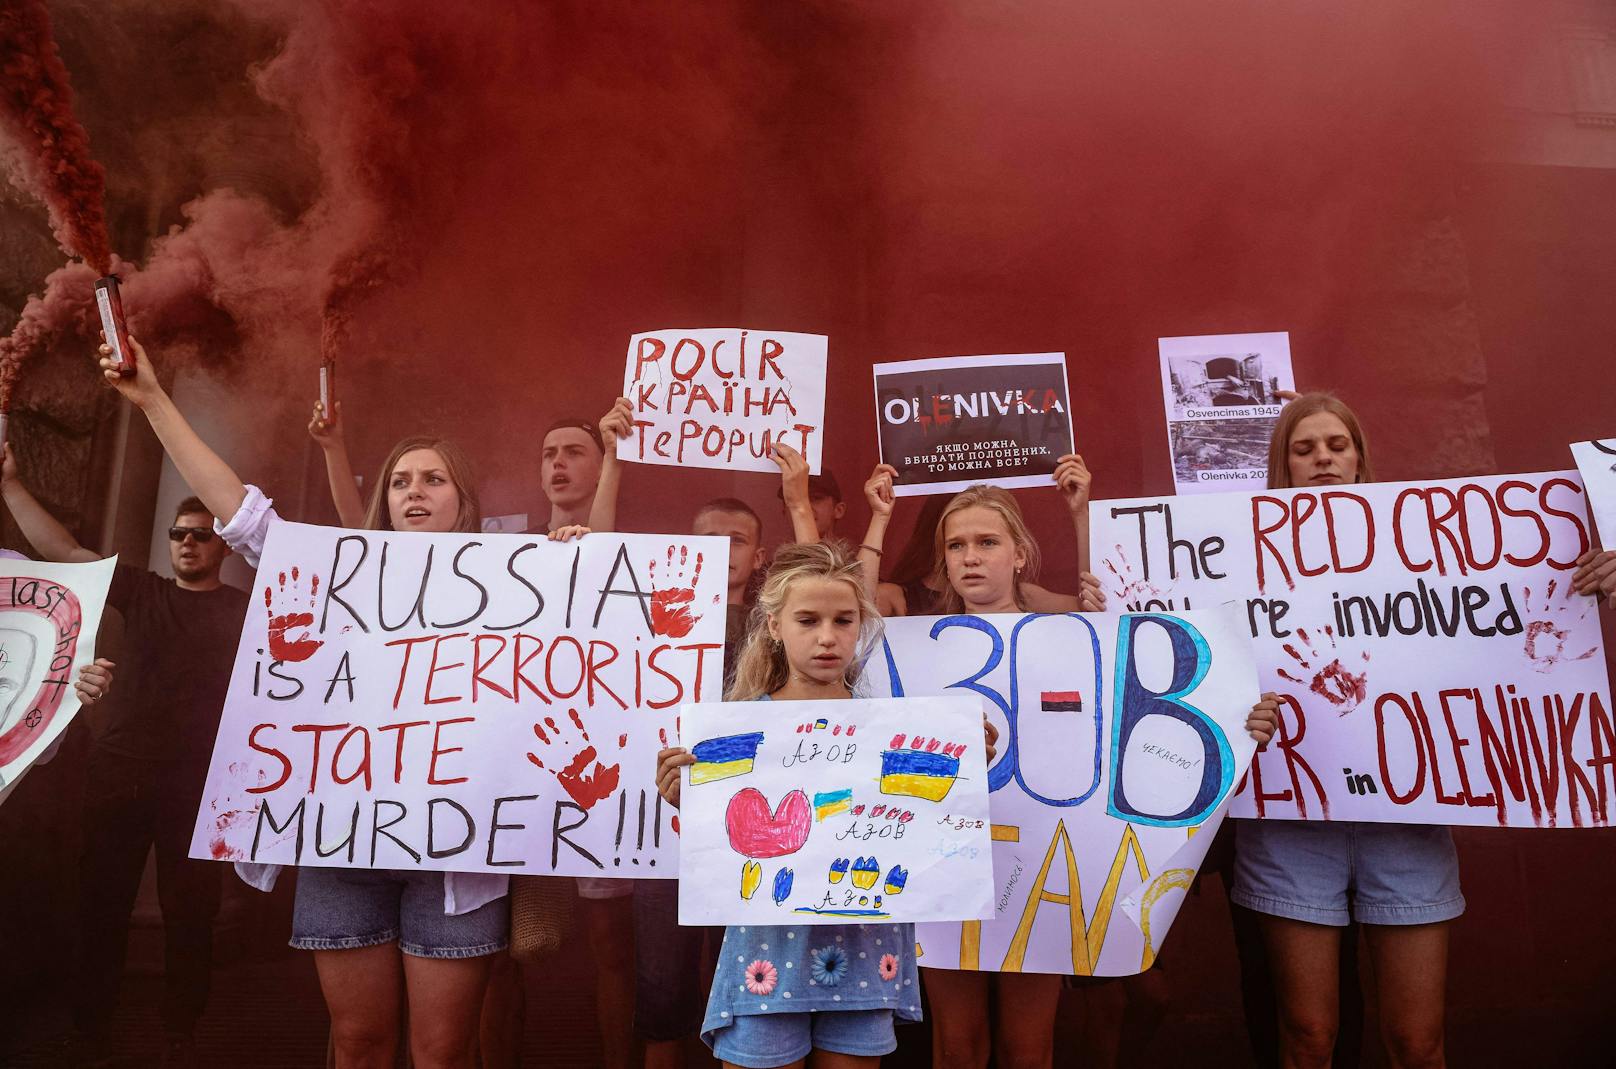 "Russland ist ein Terrorstaat" und ähnliche Slogans waren bei folgenden Protesten auf den Plakaten zu lesen.